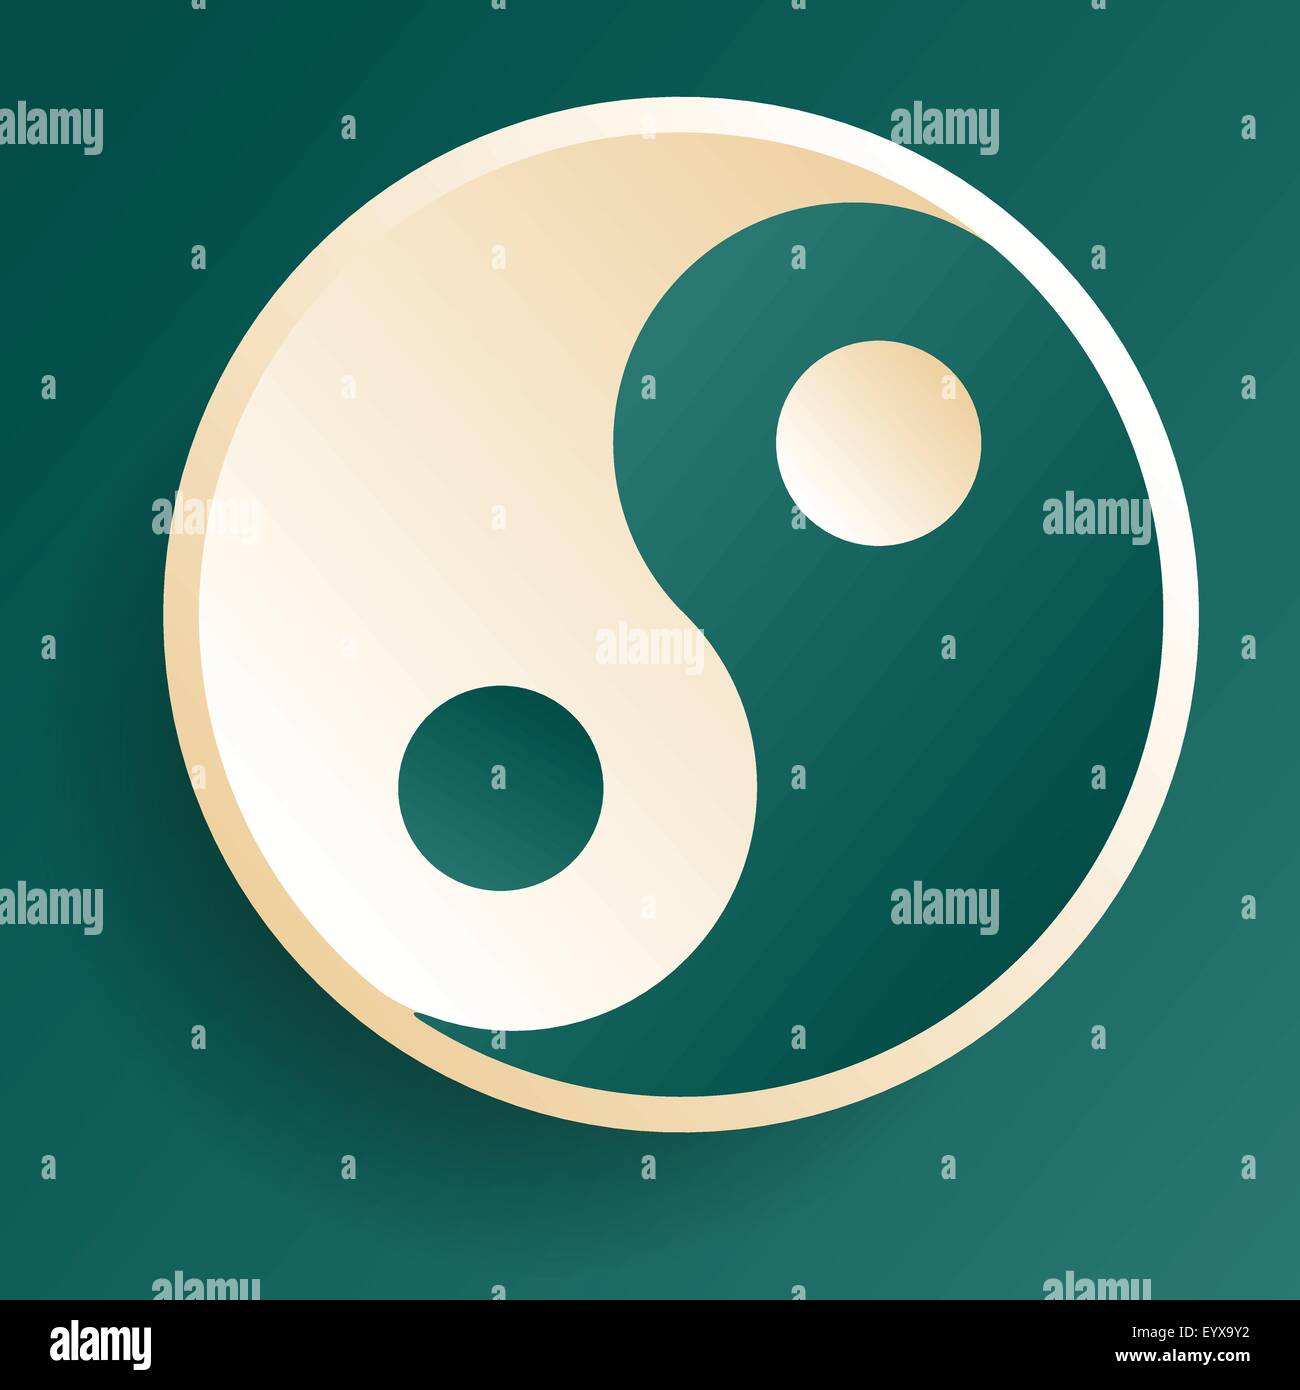 Armonia equilibrio simbolo ying-yang illustrazione vettoriale. Illustrazione Vettoriale